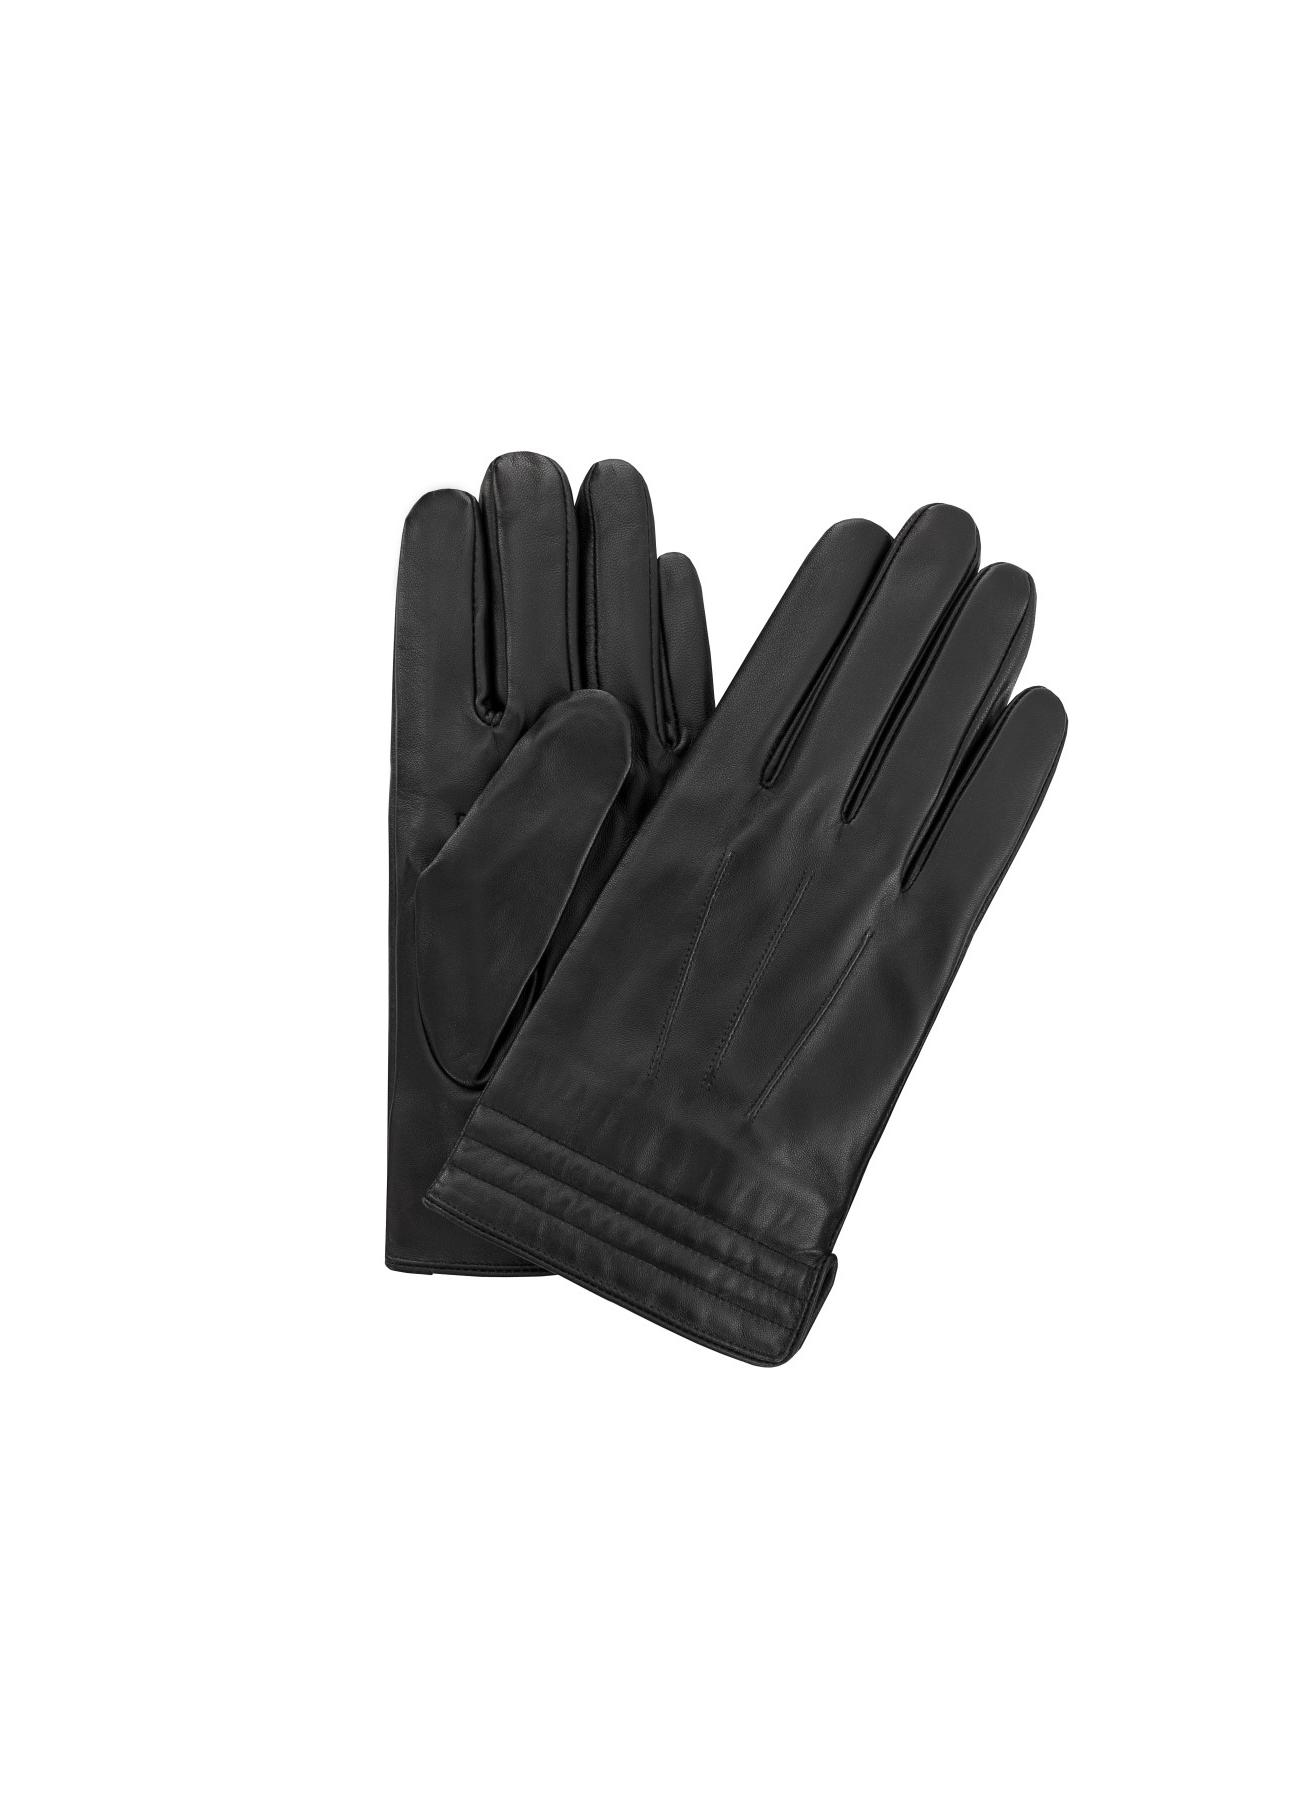 Czarne skórzane rękawiczki męskie REKMS-0014-99(Z23)